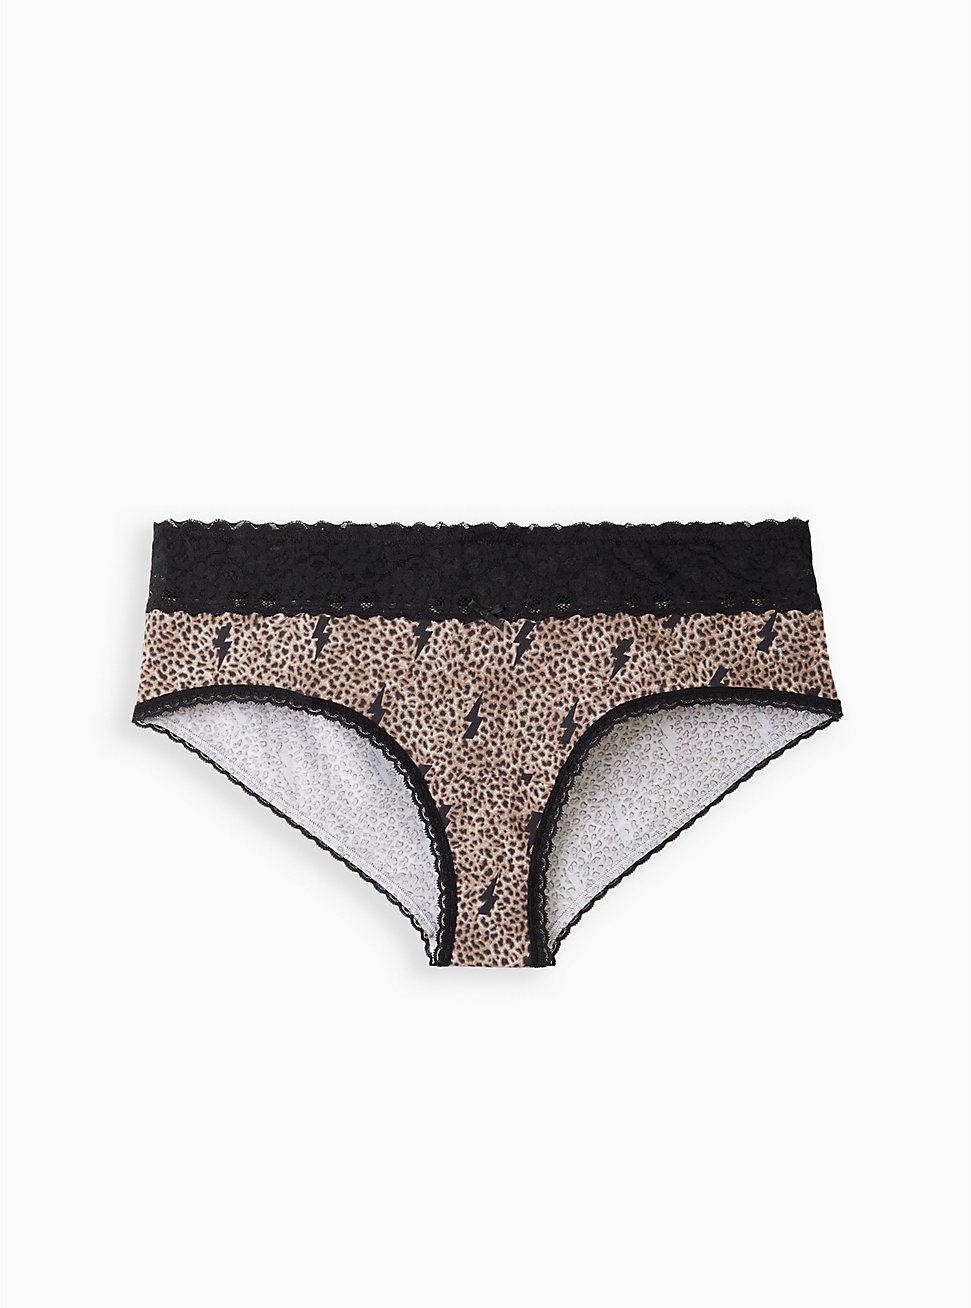 Plus Size Cheeky Panty - Wide Lace Cotton Leopard Bolts, LEOPARD - TAN, hi-res